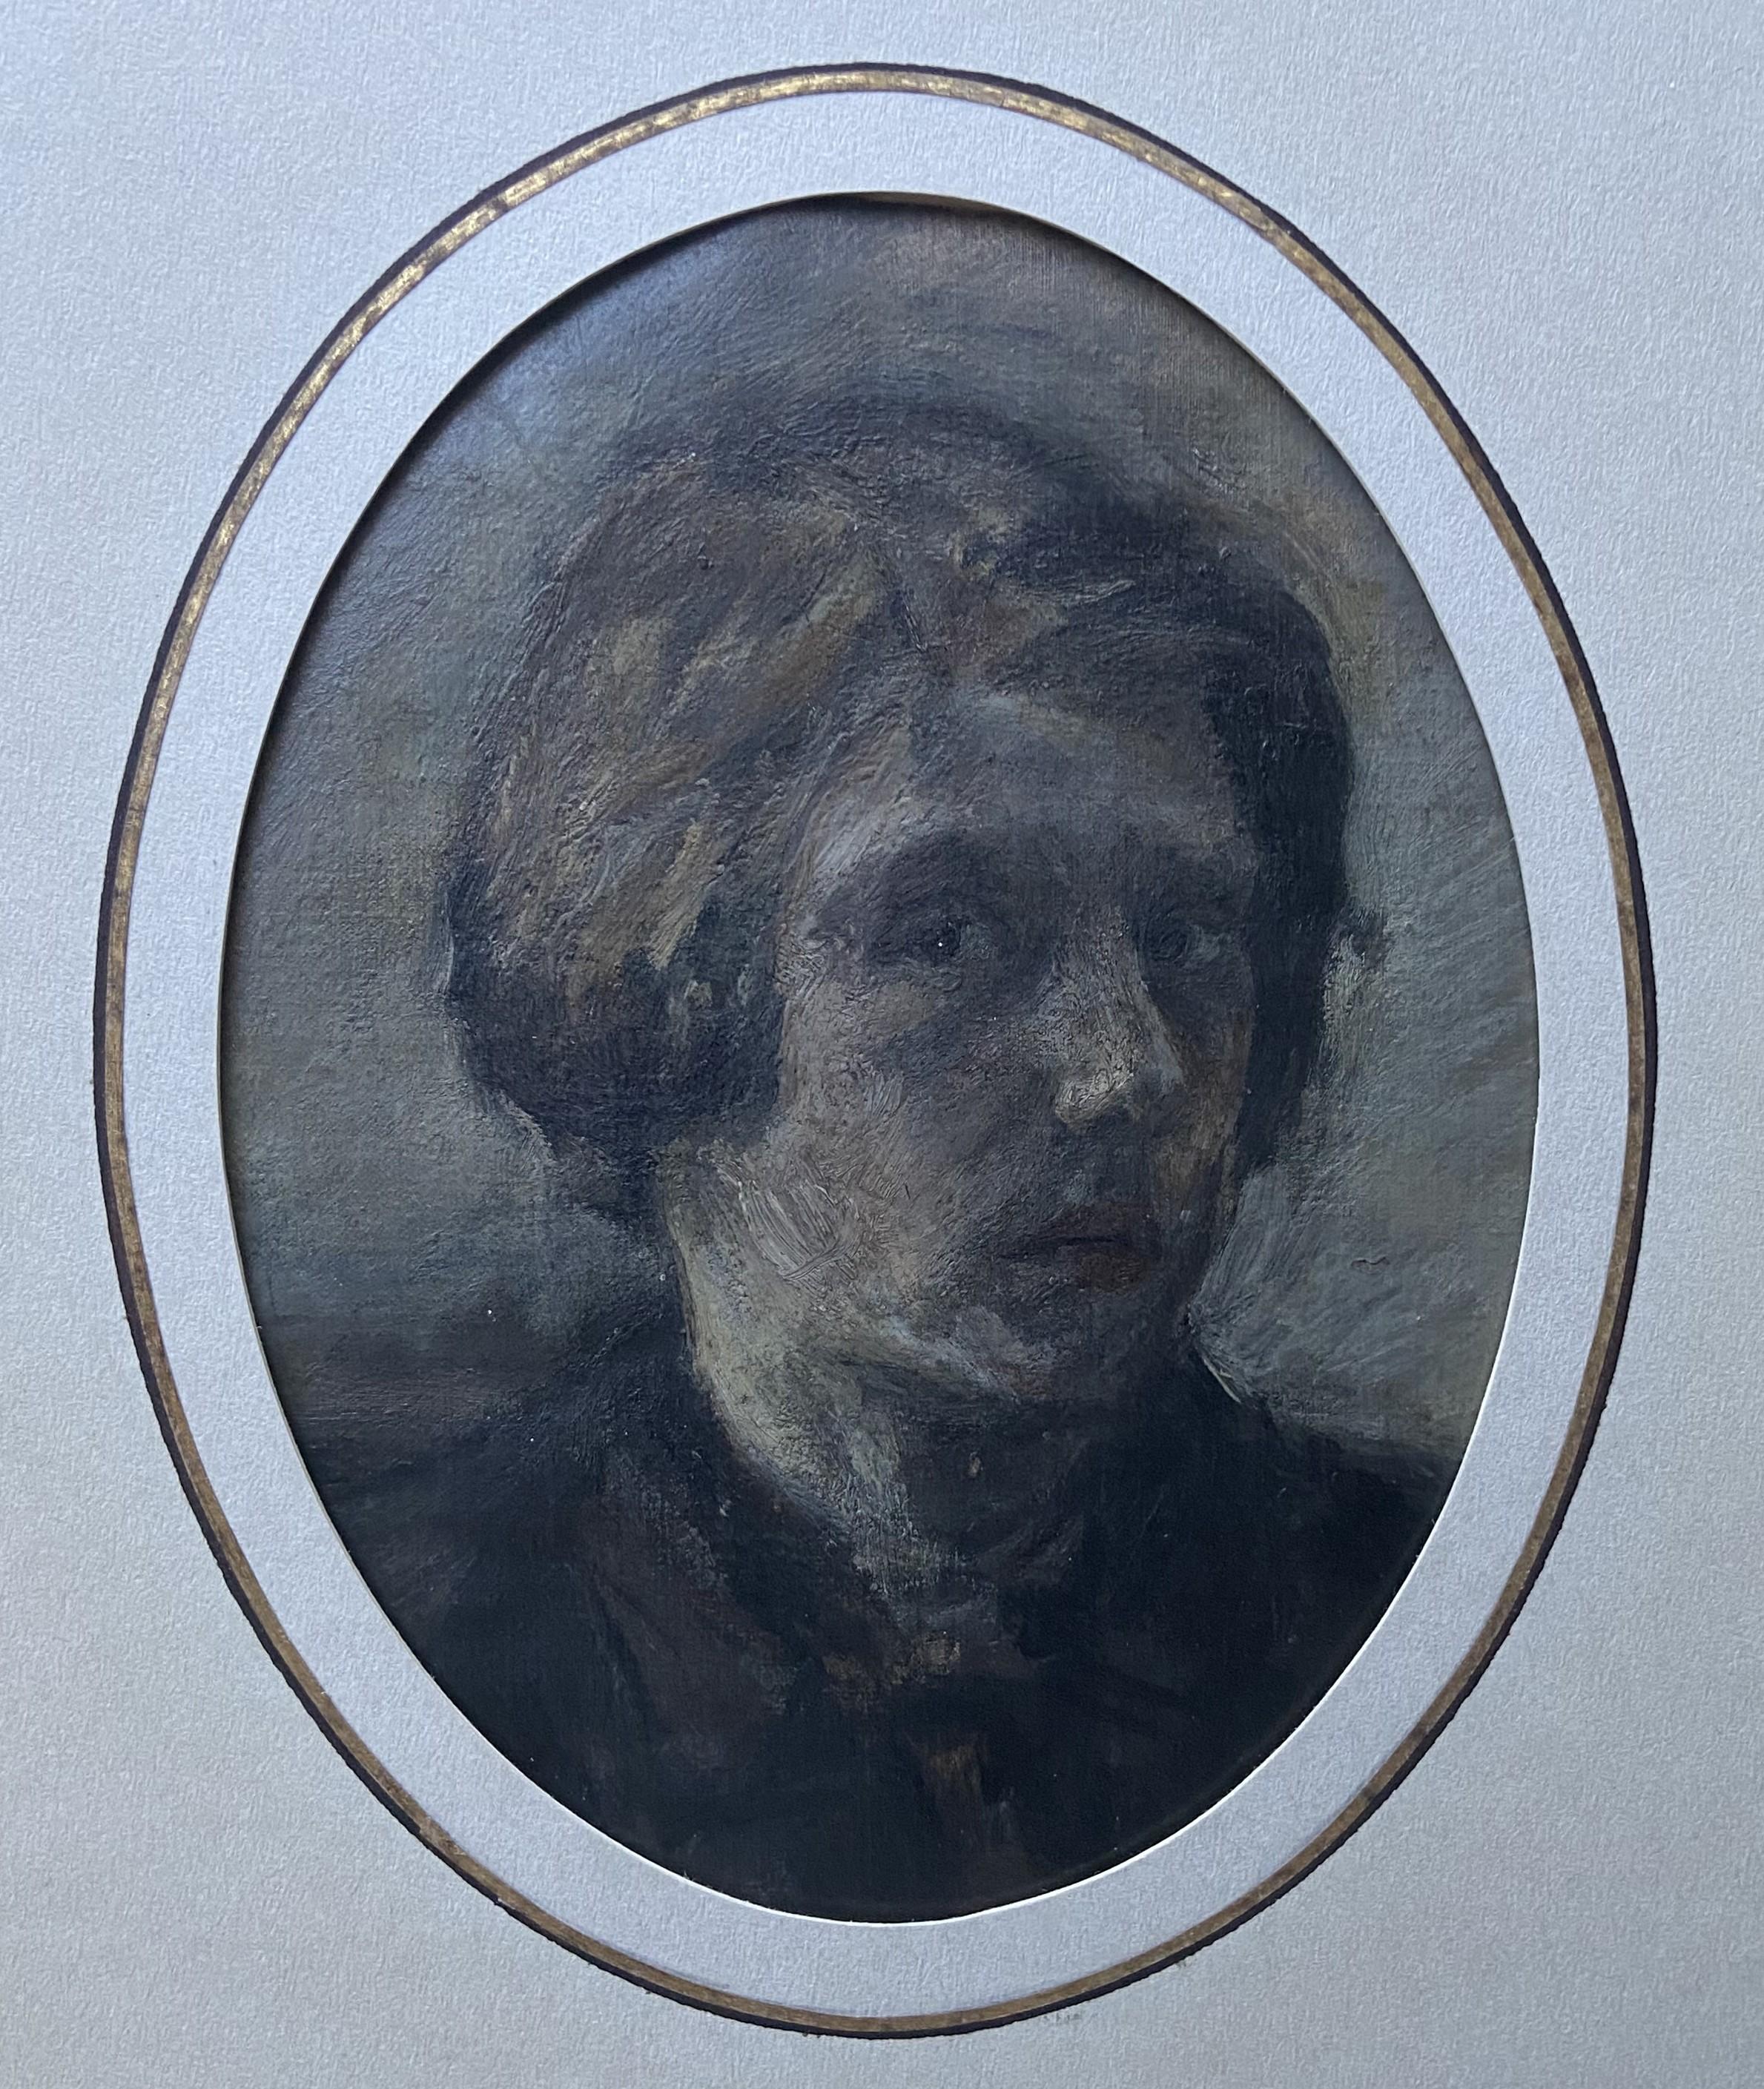 Französische Romantische Schule, 19. Jahrhundert, Porträt eines Mannes, Öl auf Papier